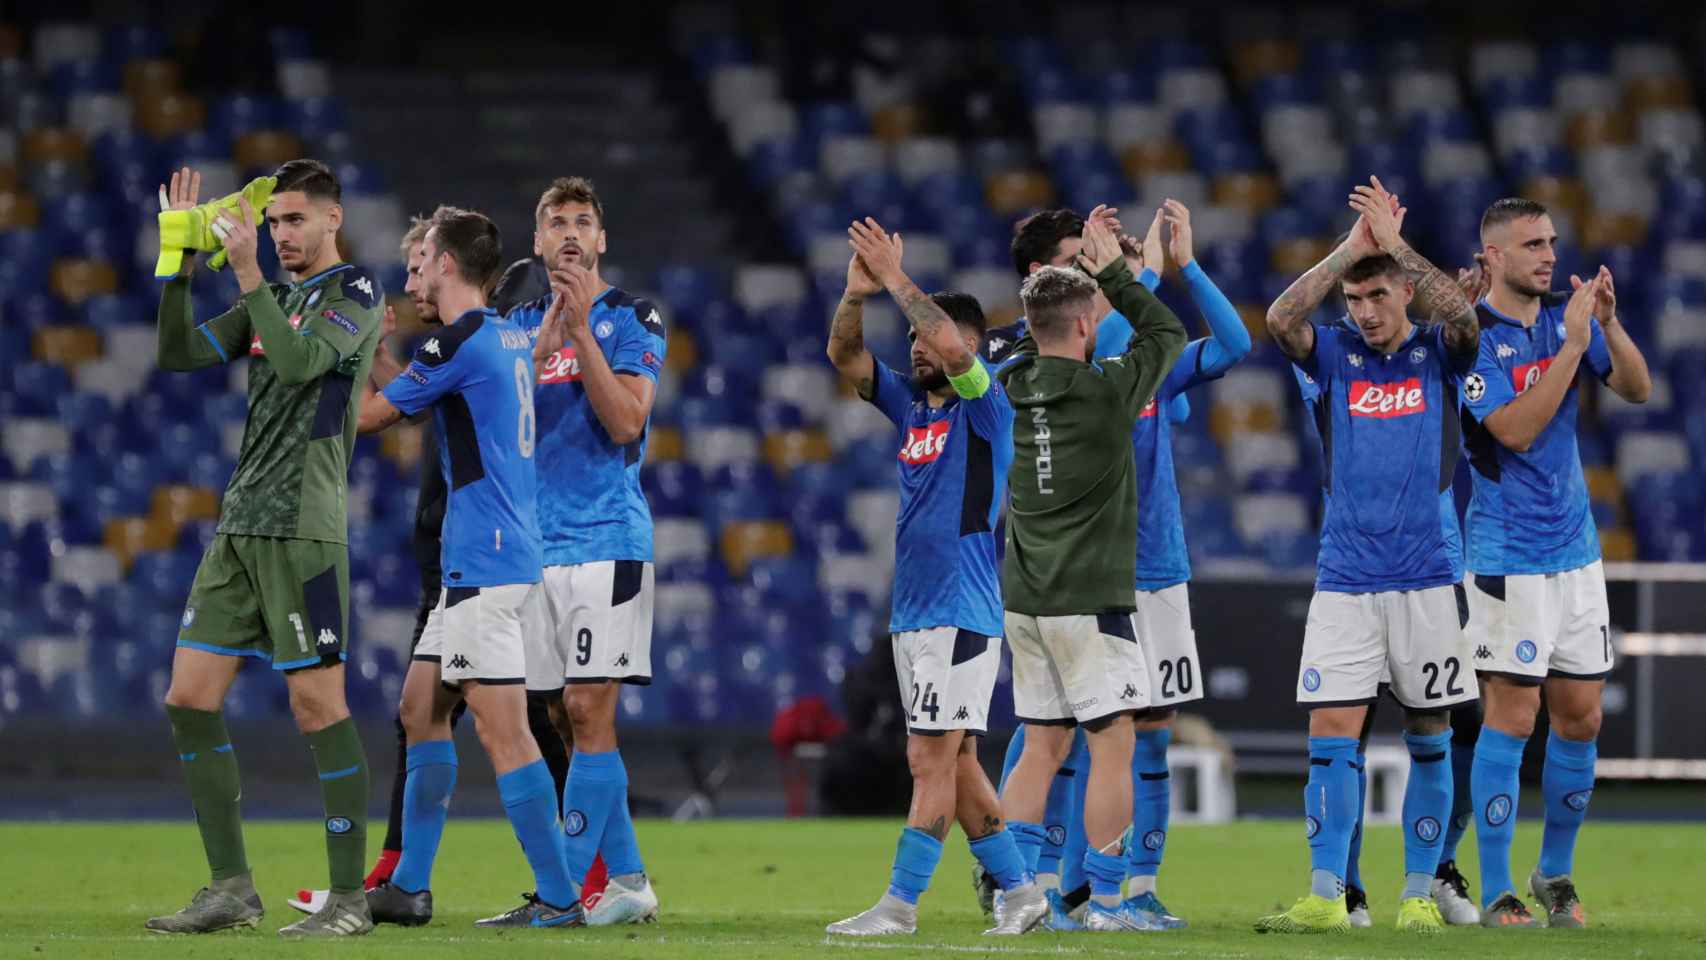 La plantilla del Nápoles tras un partido de Champions